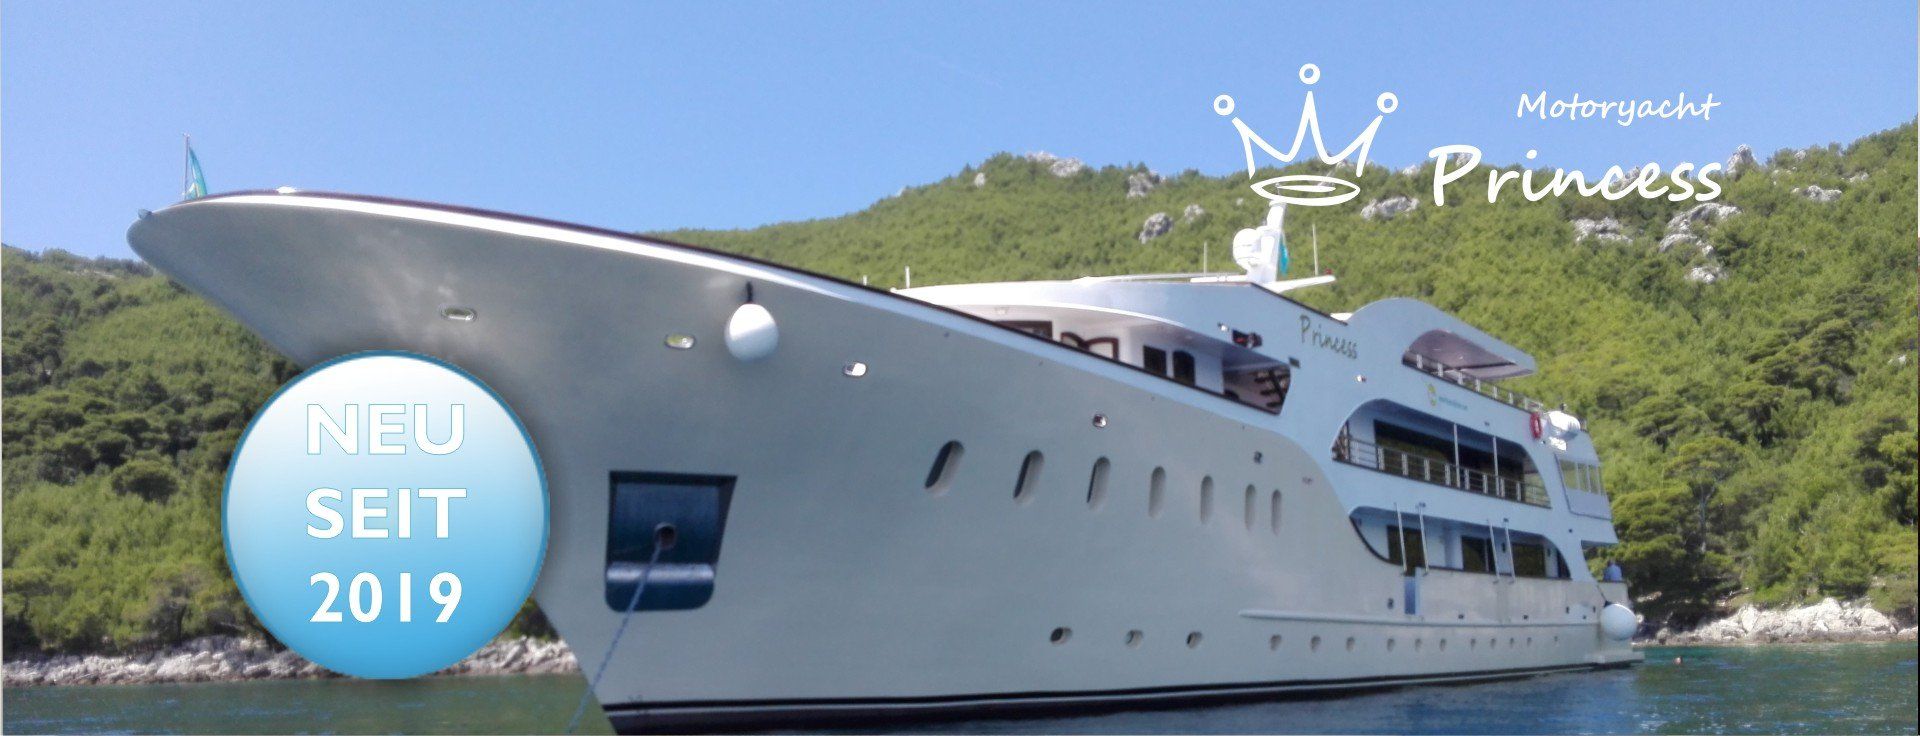 yacht kreuzfahrt kroatien 2023